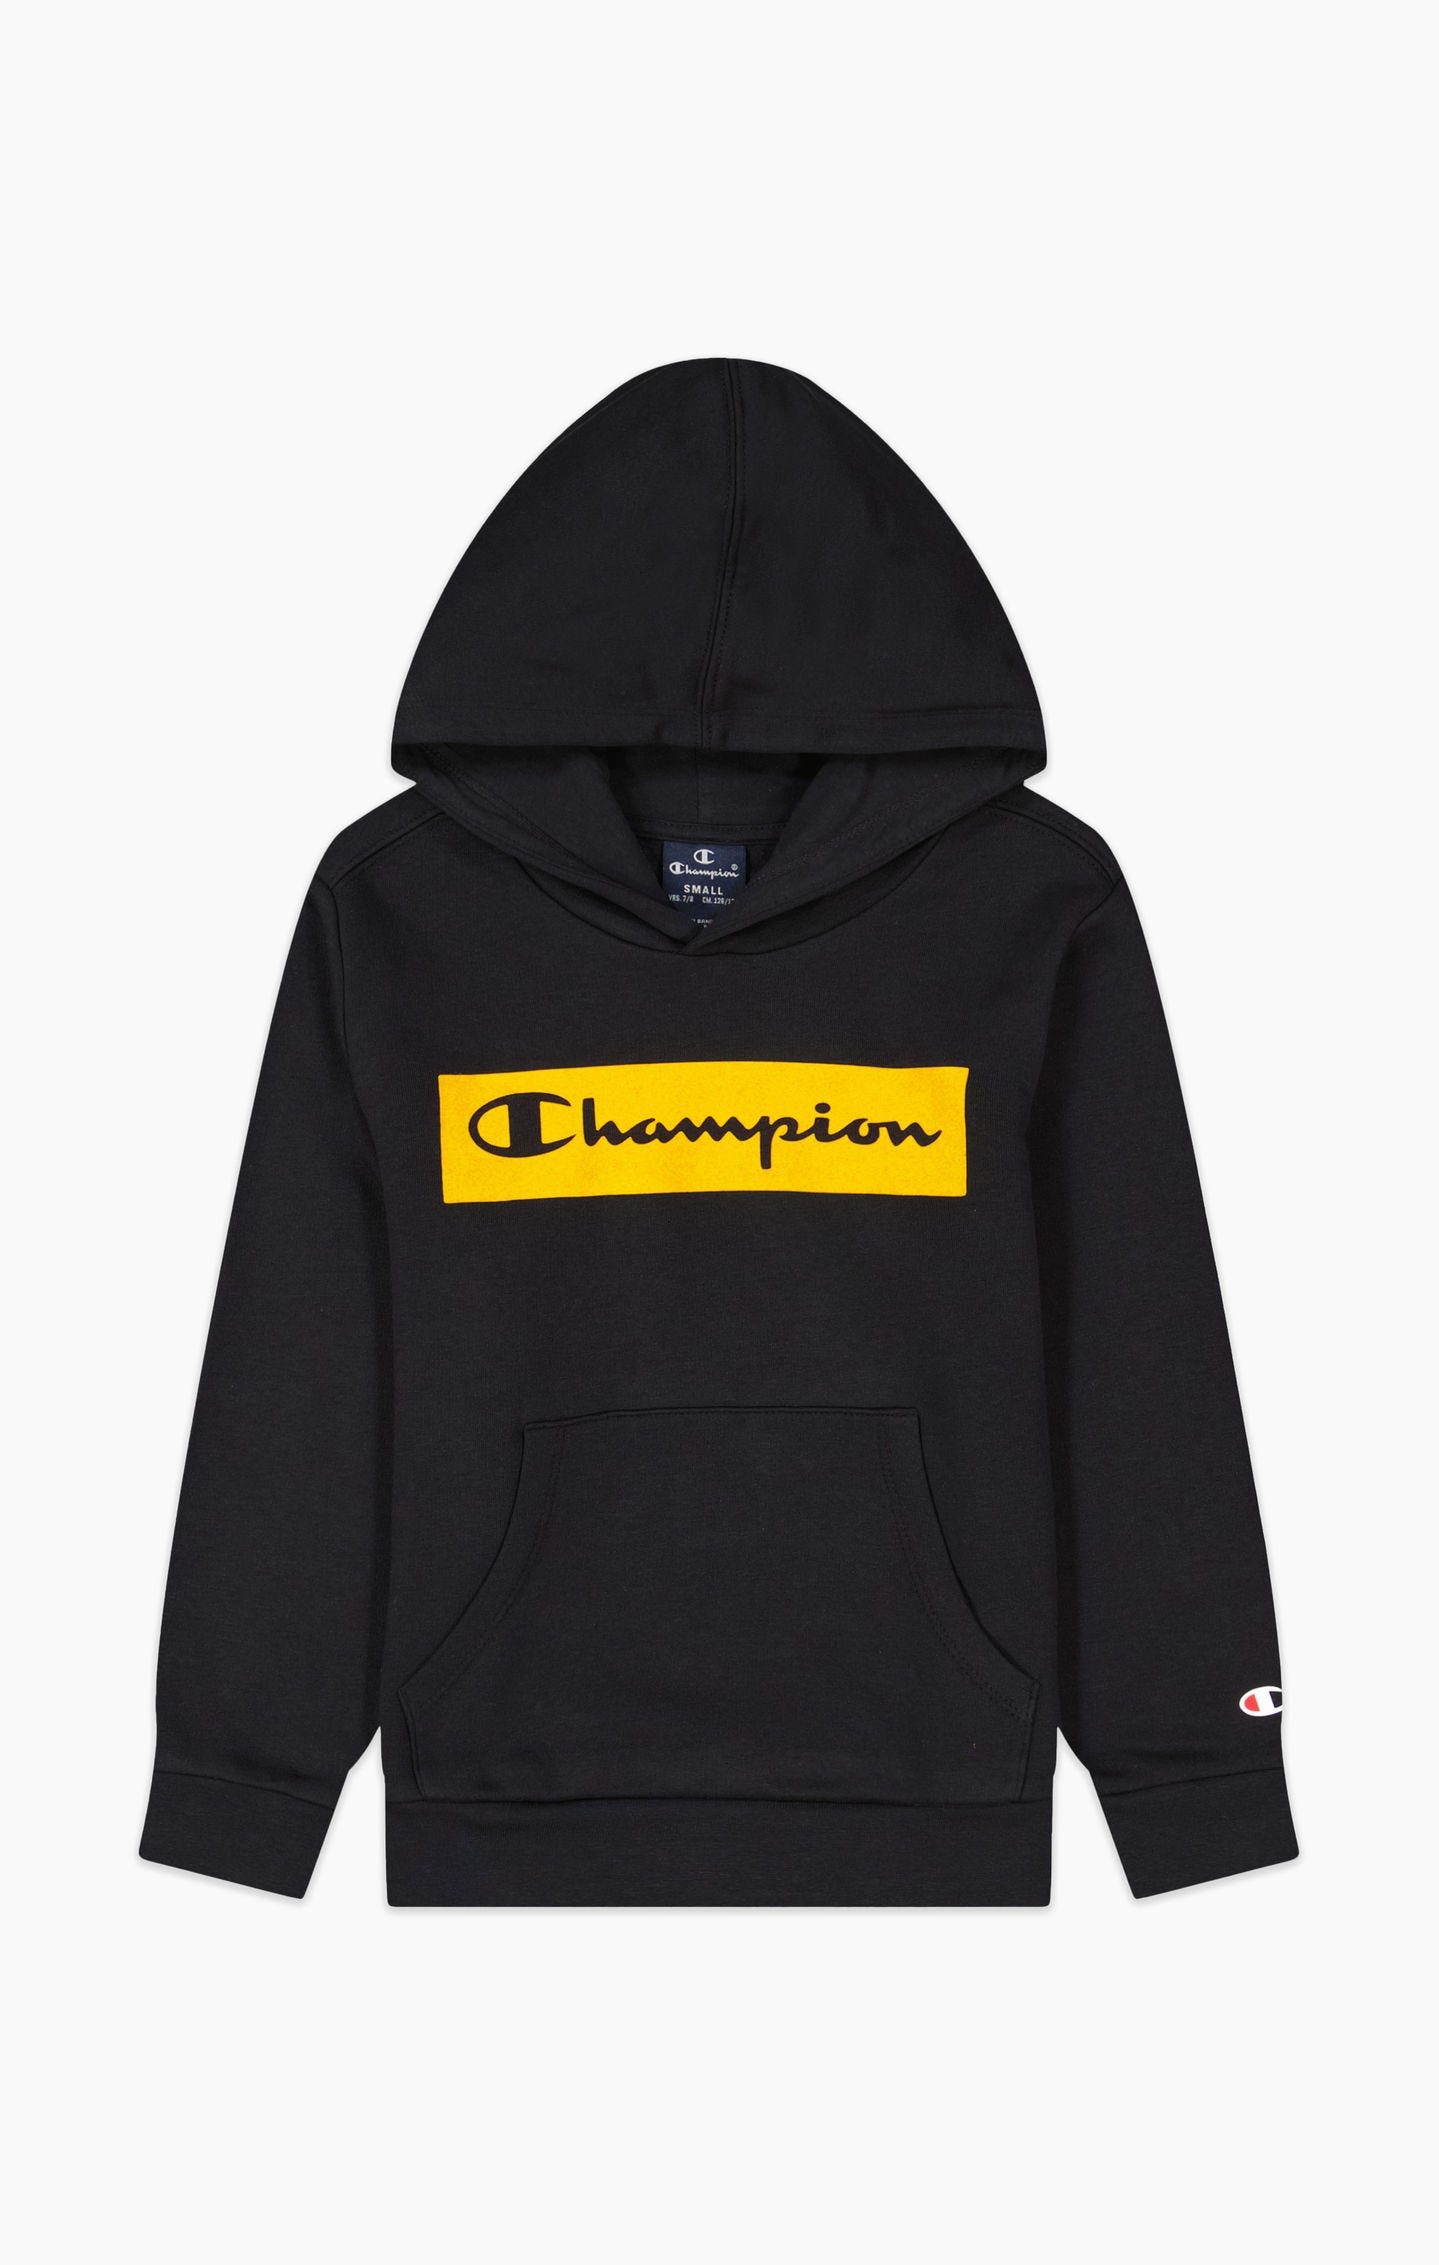 Sweatshirt à capuche et logo Champion dégradé - Garçons